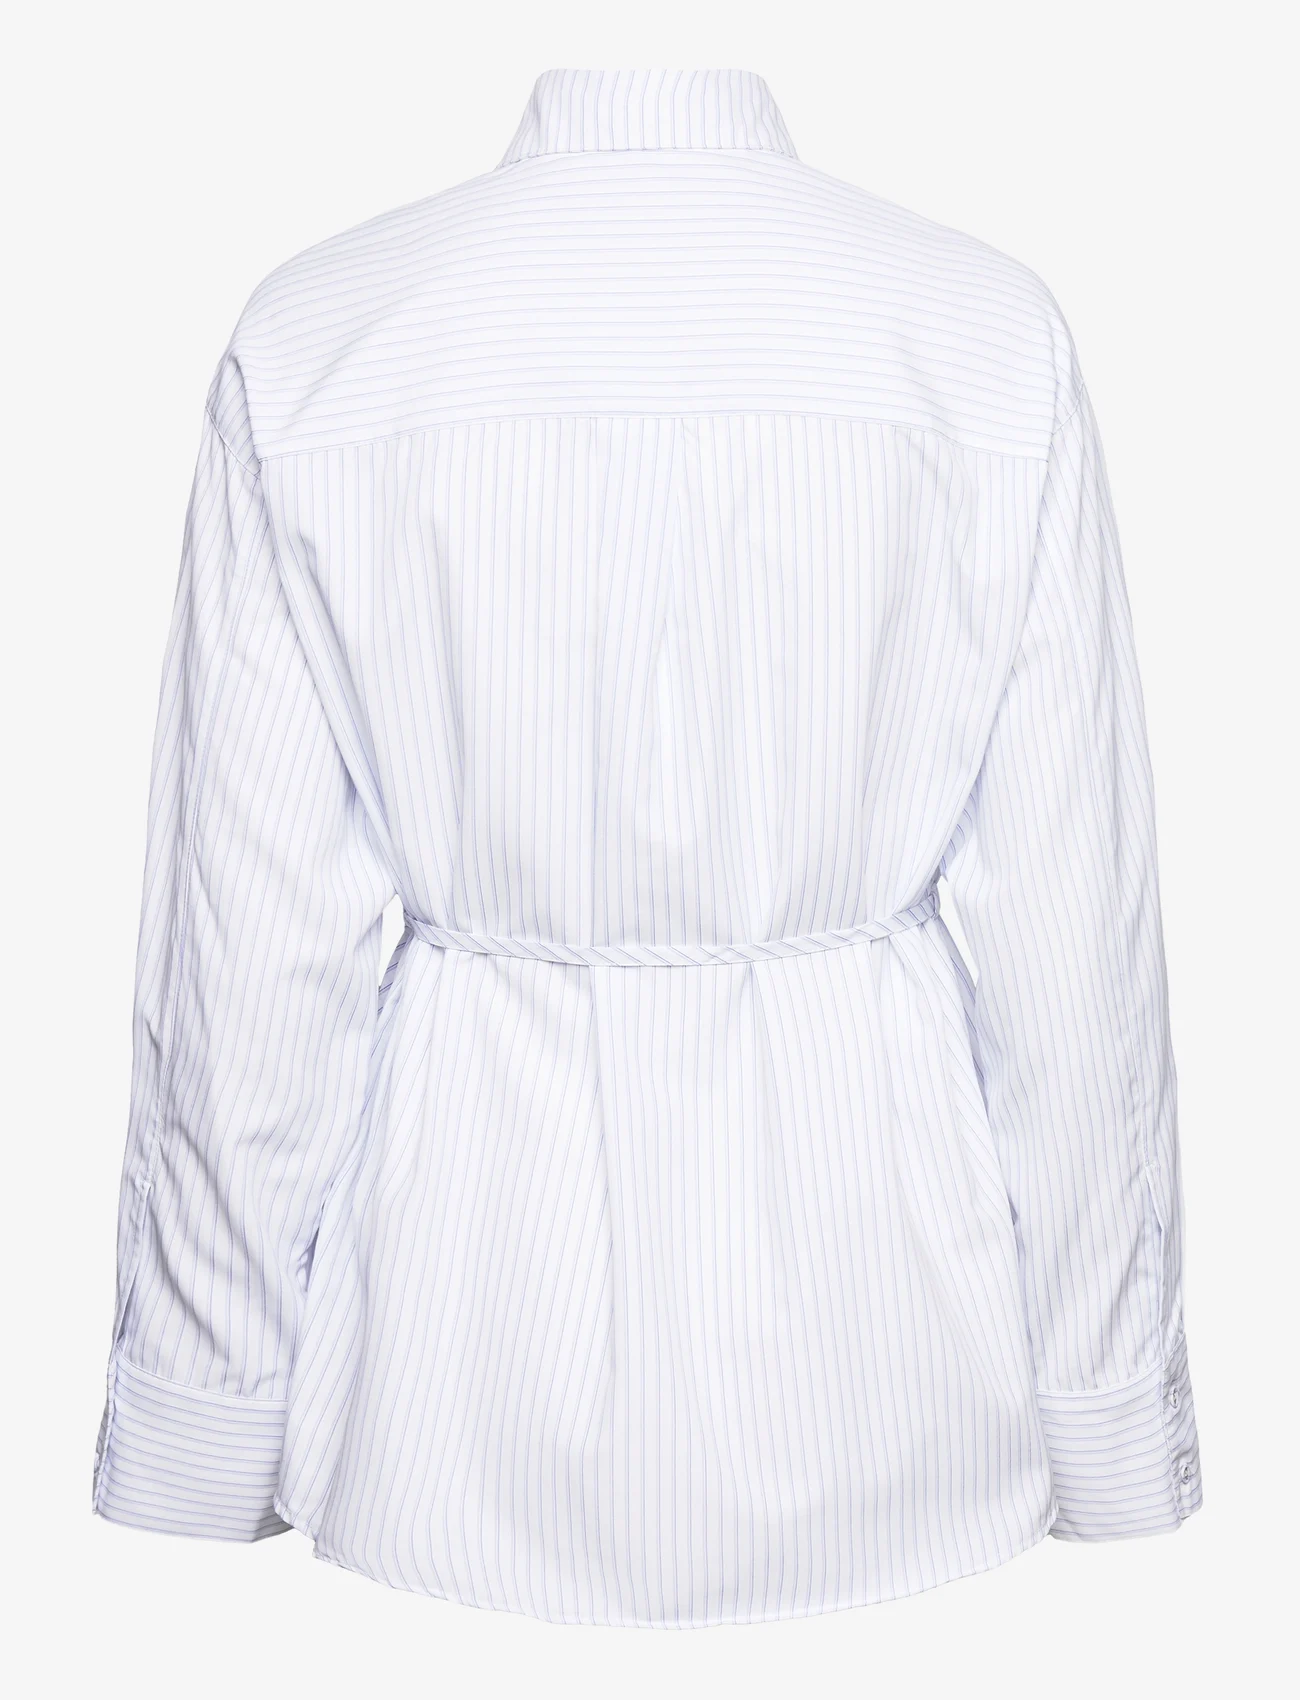 NORR - Mona shirt - langærmede skjorter - off-white - 1